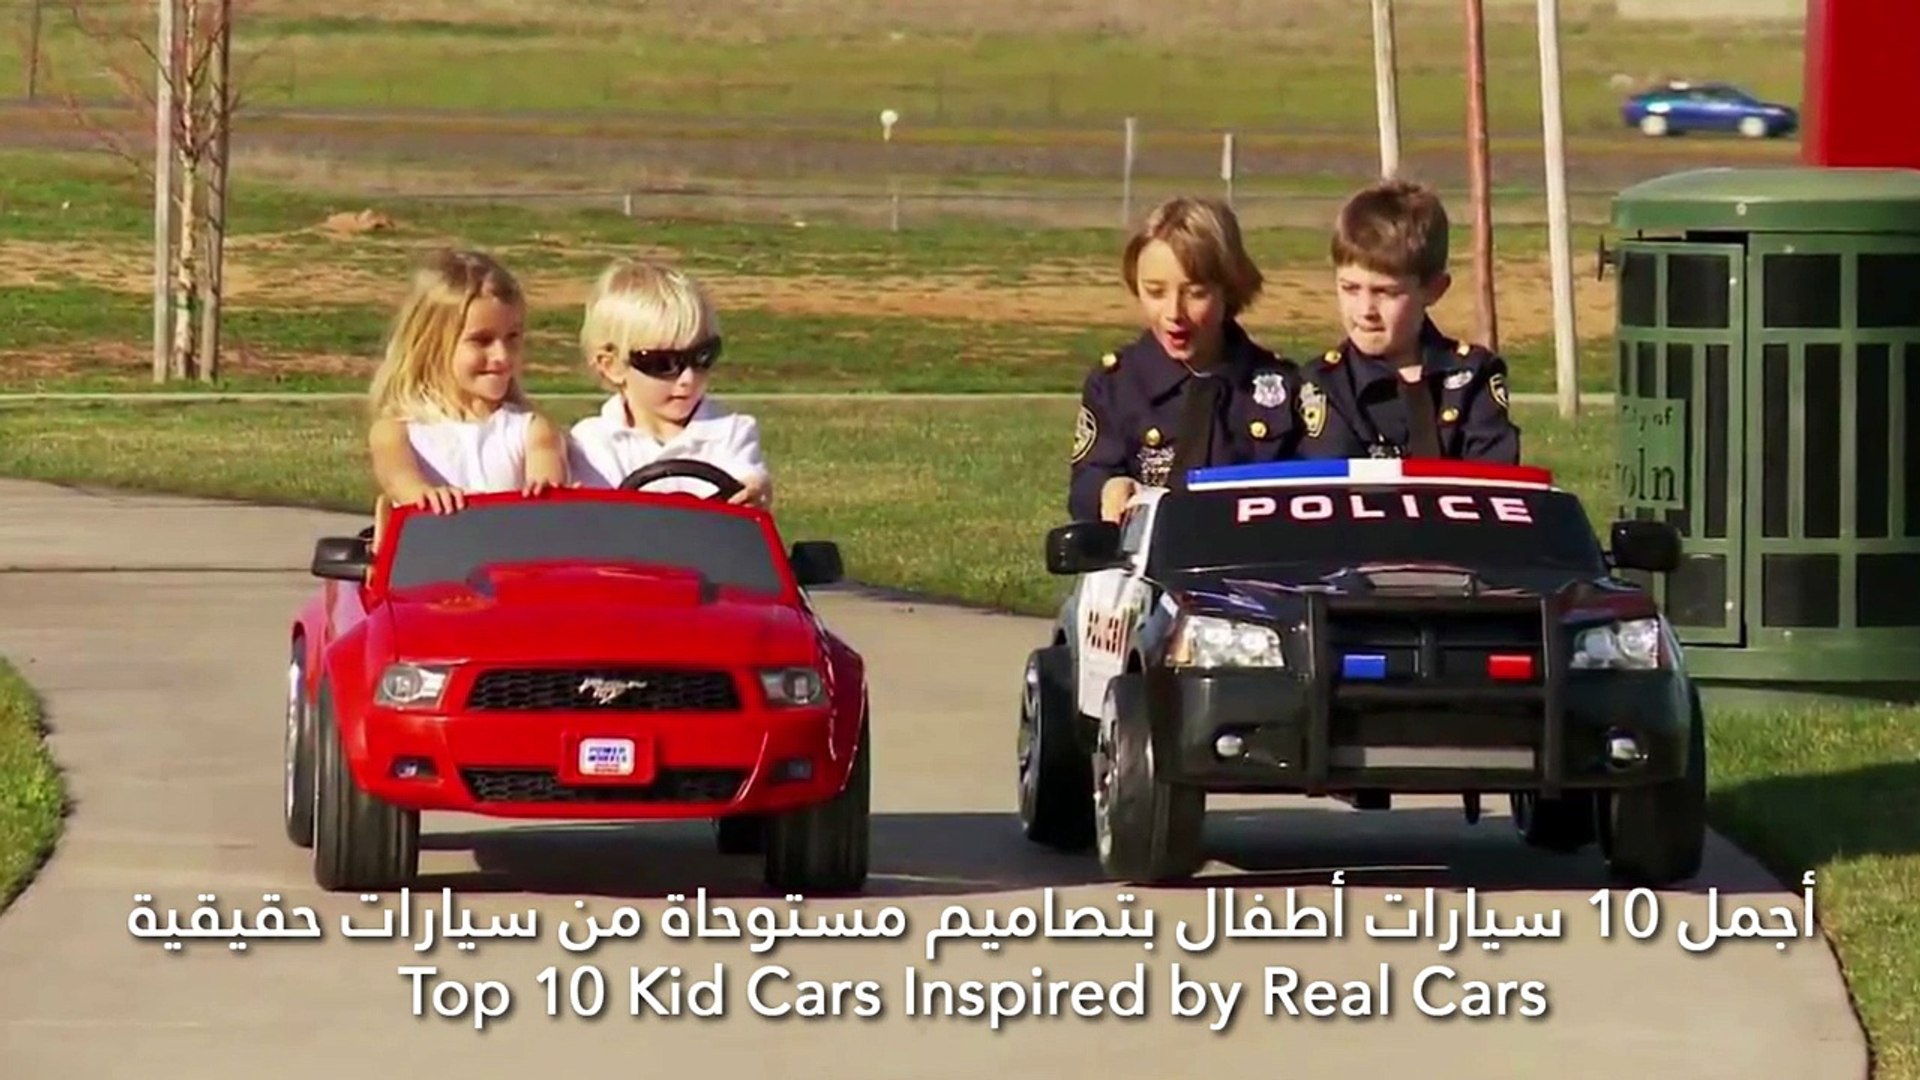 فيديو أجمل 10 سيارات أطفال بتصاميم مستوحاة من سيارات حقيقية - فيديو  Dailymotion